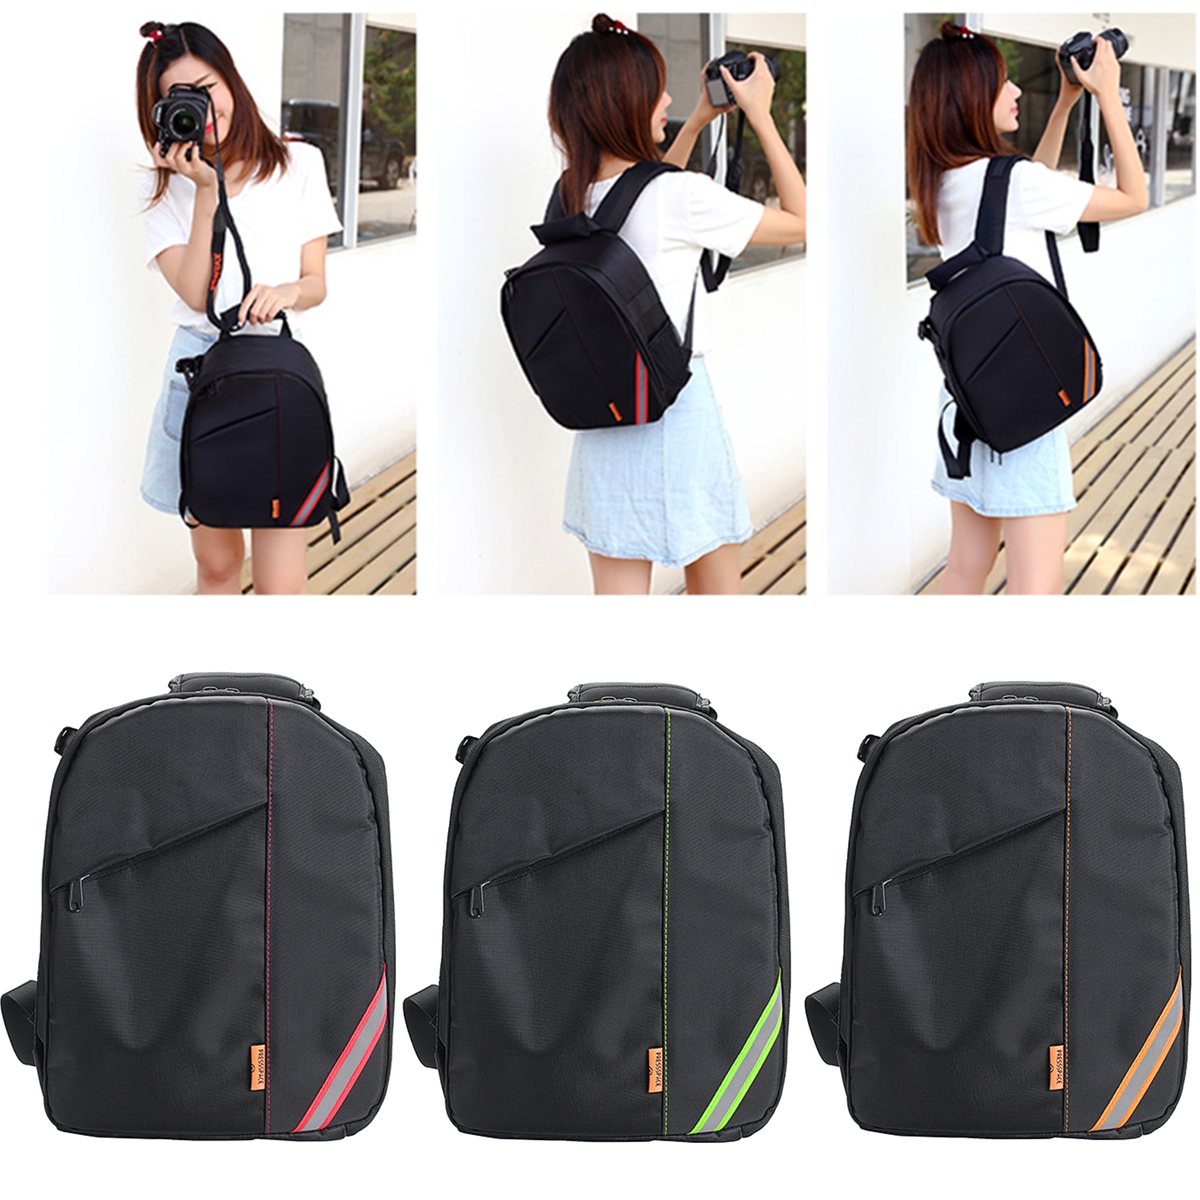 Waterproof-Shoulder-Bag-Backpack-Rucksack-With-Reflective-Stripe-For-DSLR-Camera-1378394-9